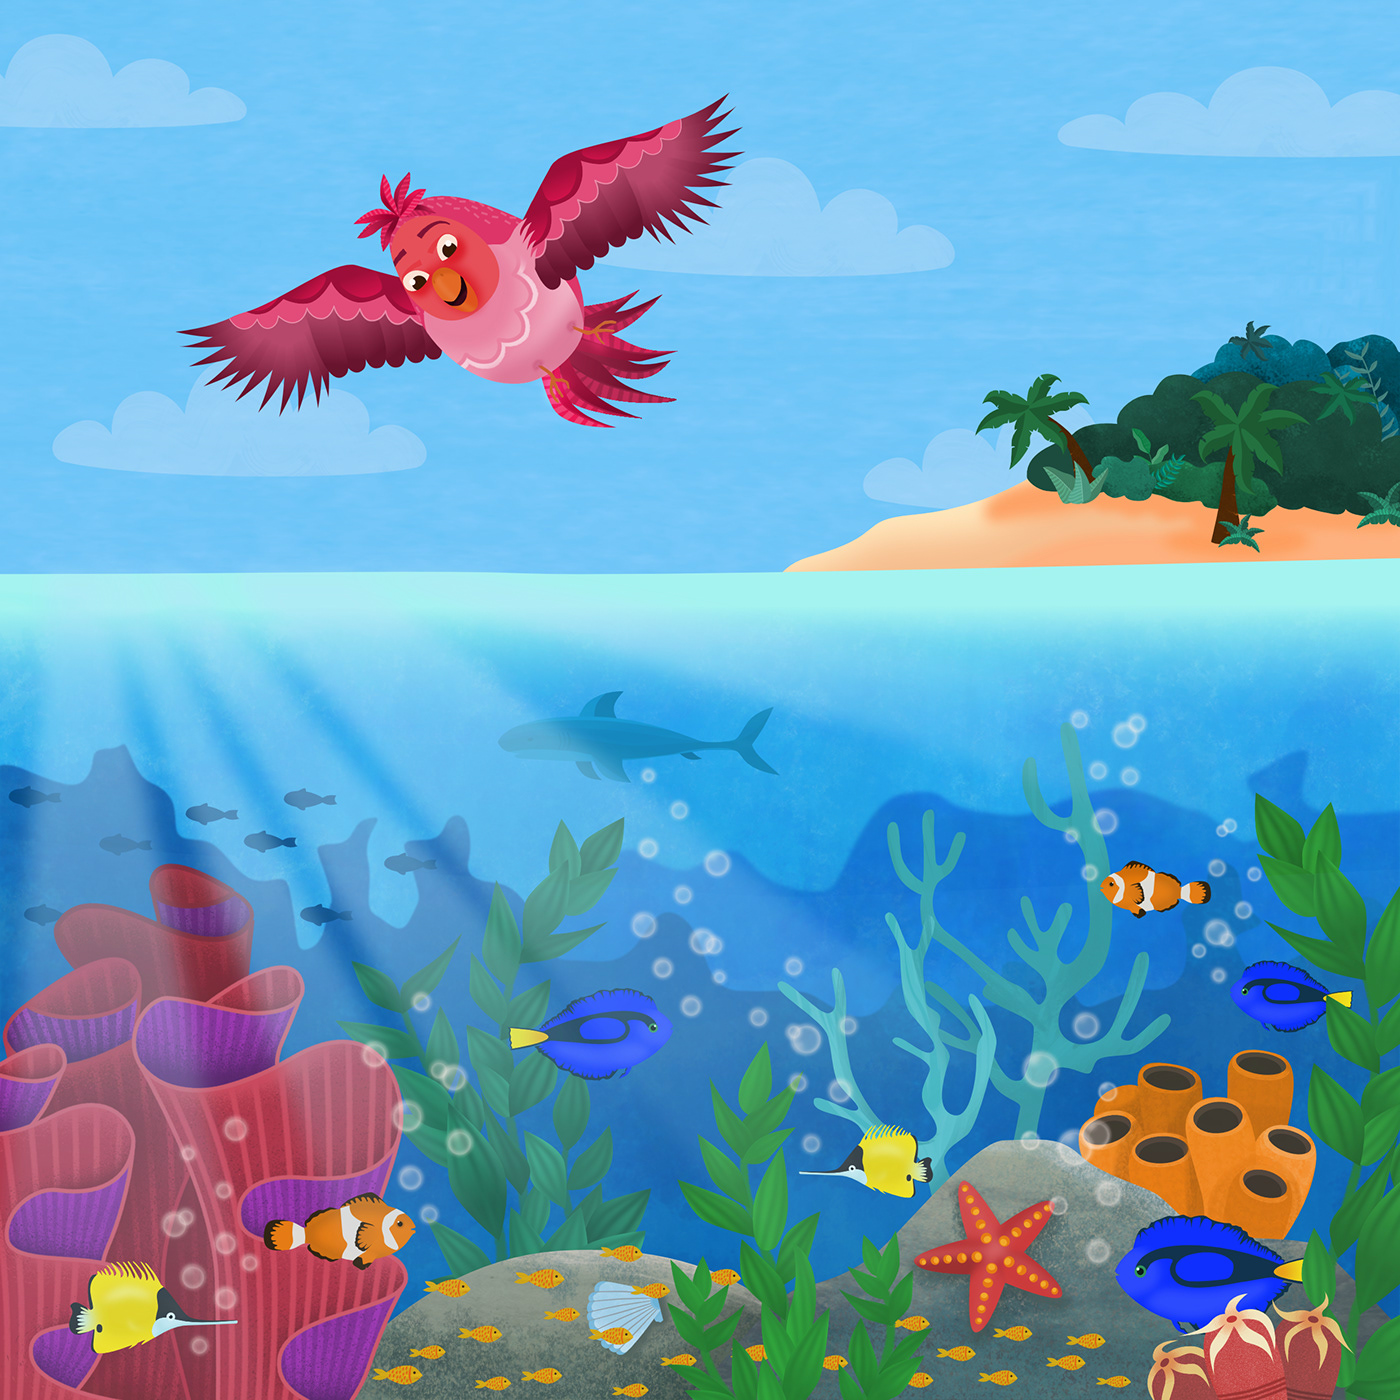 affinity designer Character design  children illustration coral Digital Art  digital illustration ILLUSTRATION  kidlitillustration Ocean reef